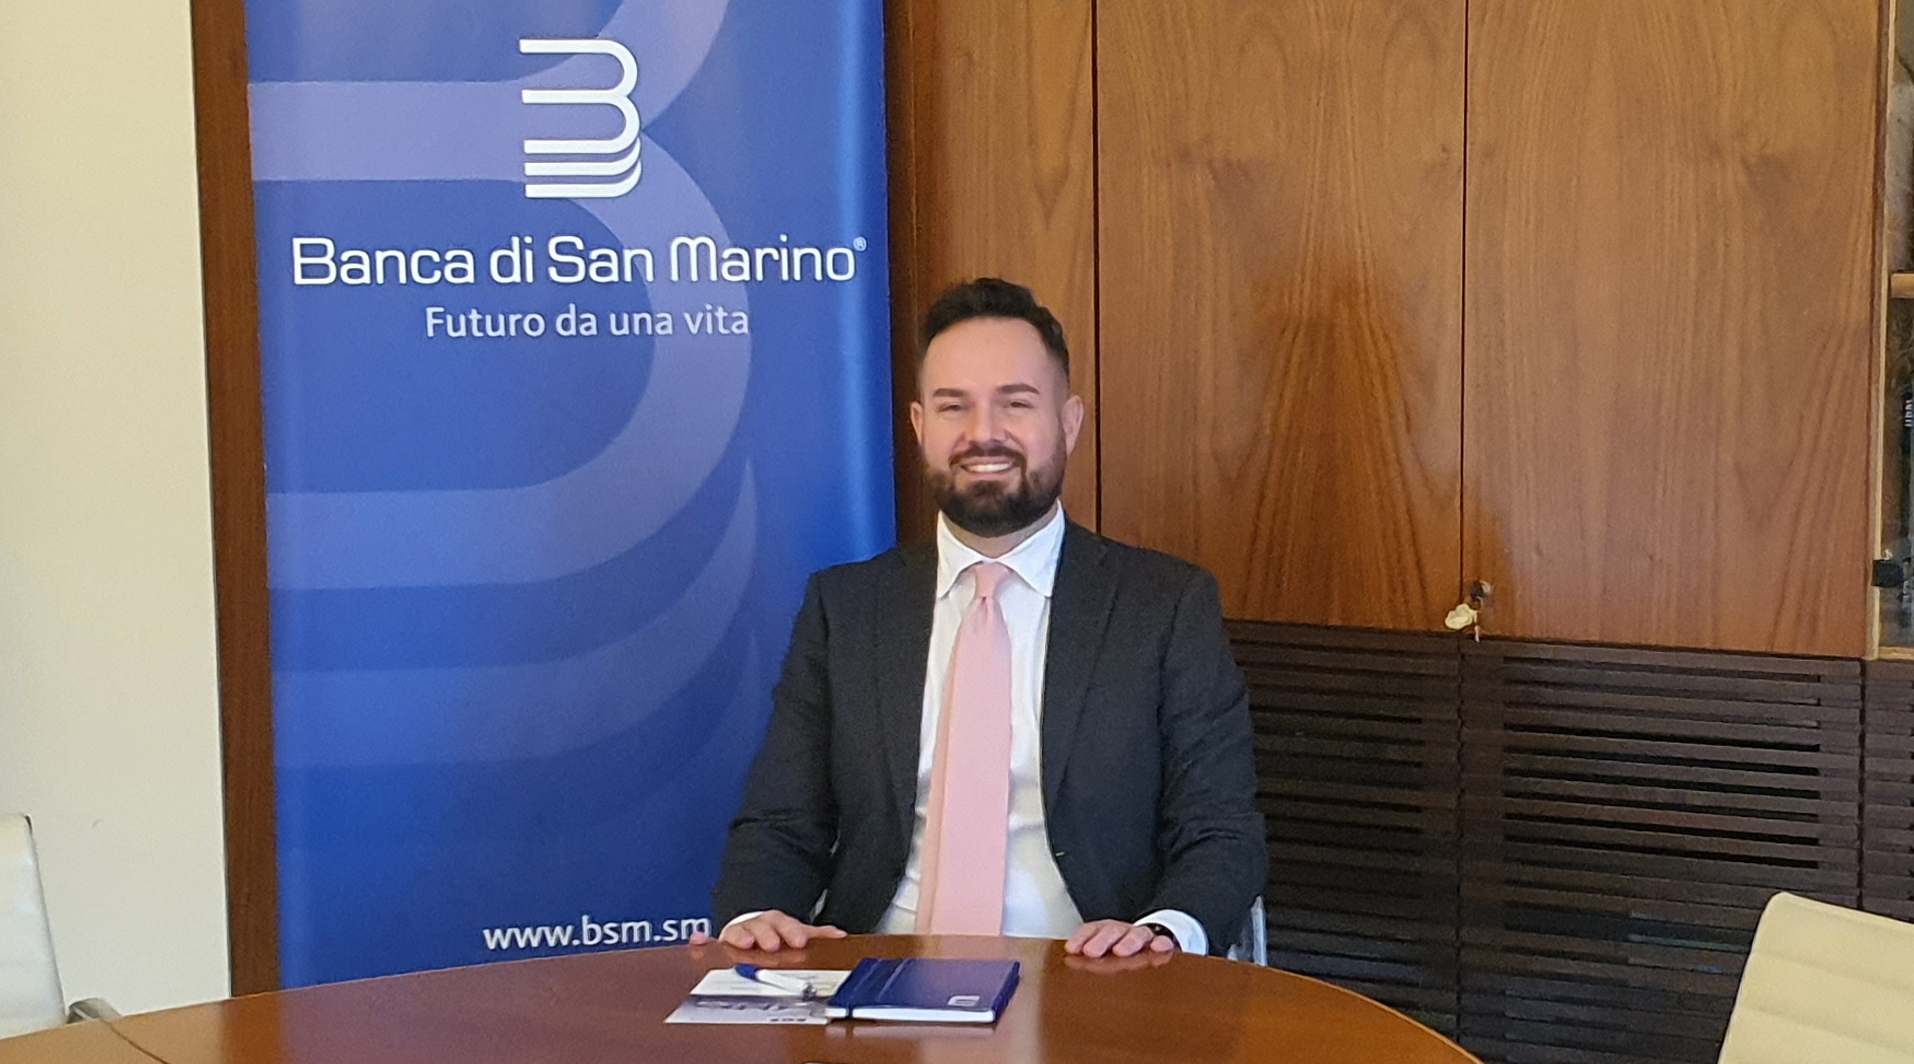 Per Banca di San Marino nuovo piano industriale e attenzione al territorio: “Il focus è sui clienti”